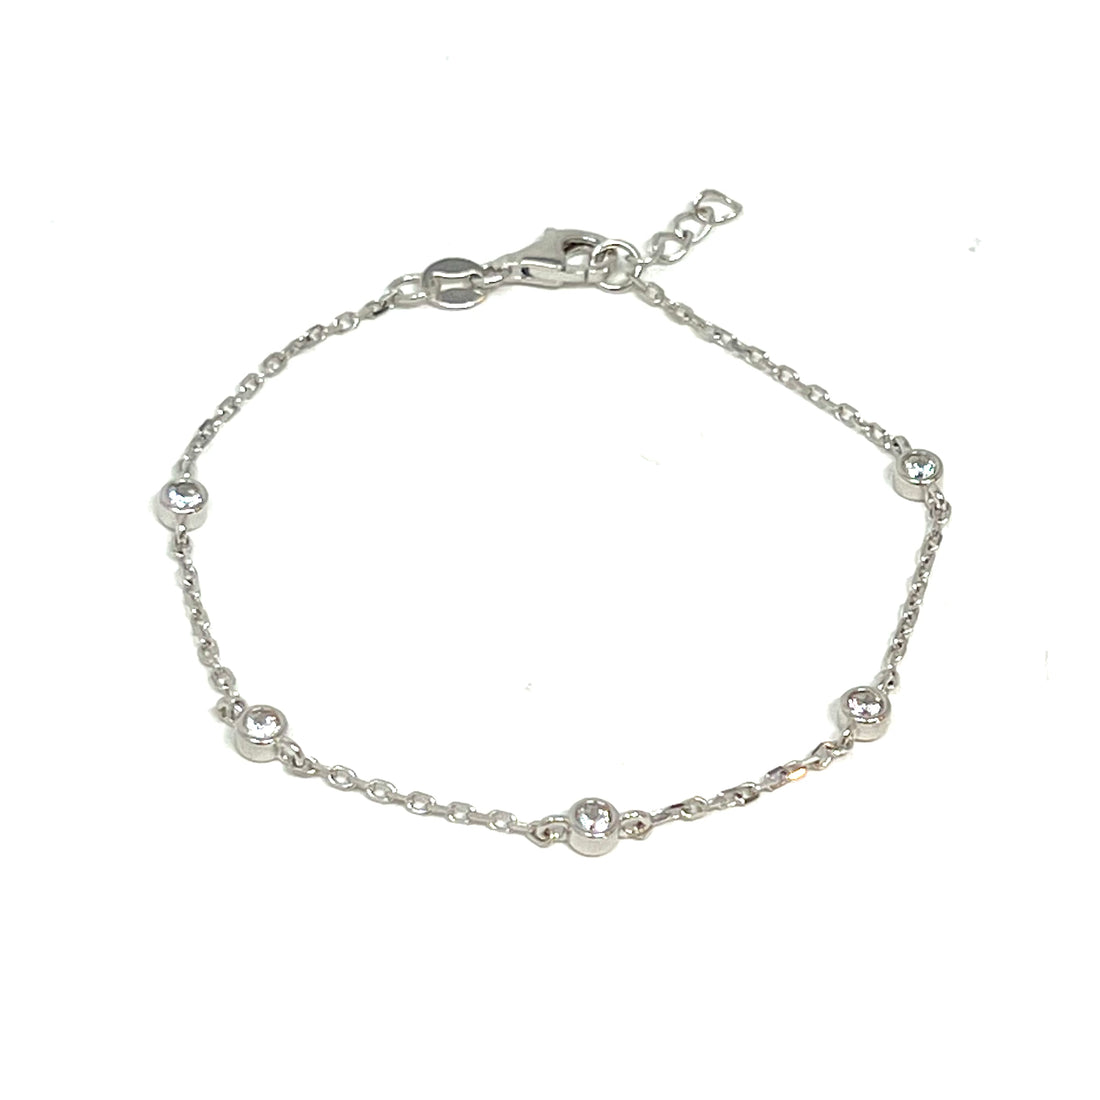 Mini Bezel Bracelet in Silver with Clear Stones